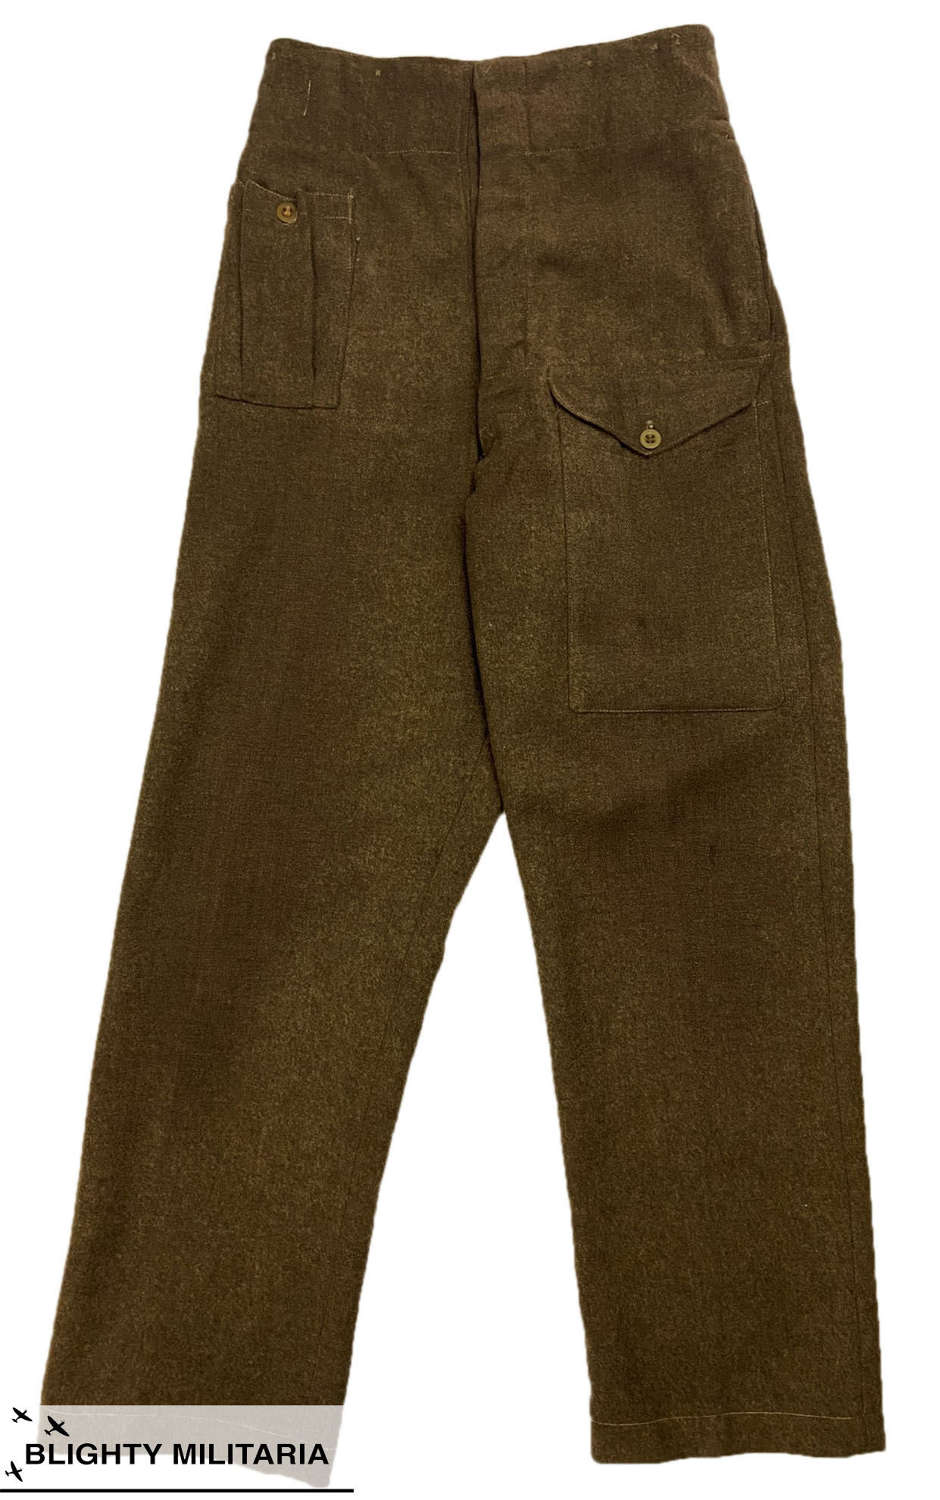 Original 1946 Pattern British Army Battledress Trousers - Size 10